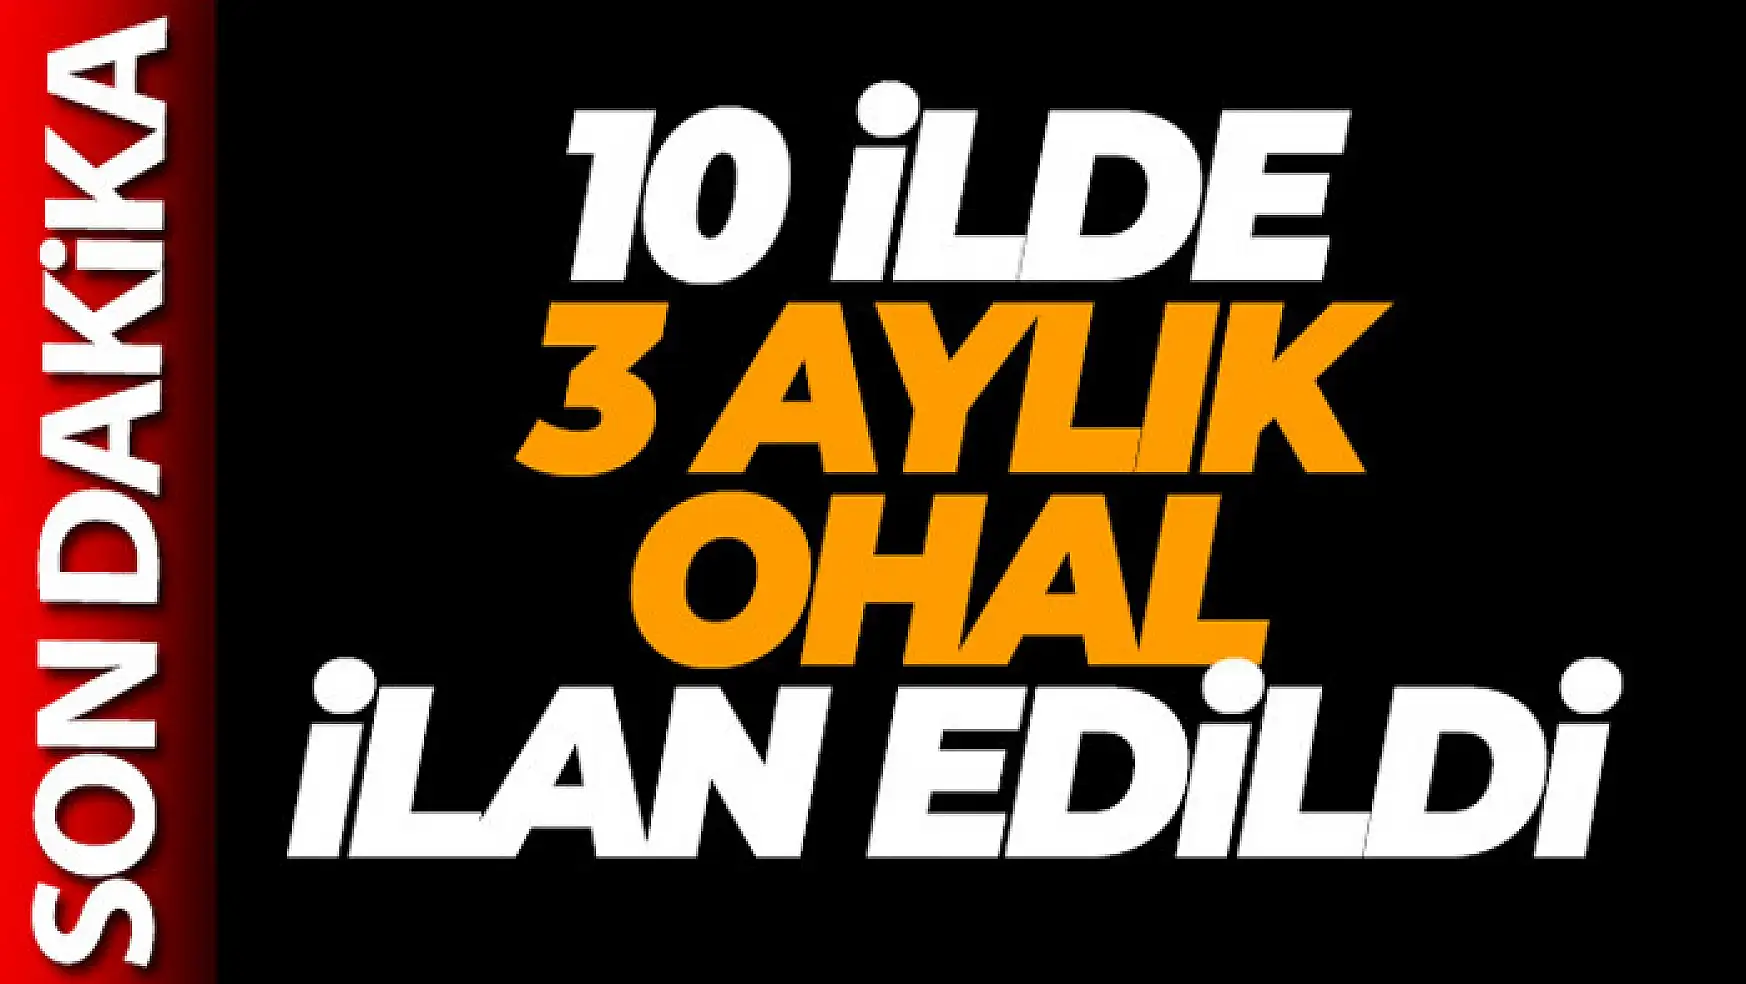 Cumhurbaşkanı Erdoğan: 'Depremden etkilenen 10 ilde 3 aylık OHAL ilan edildi'